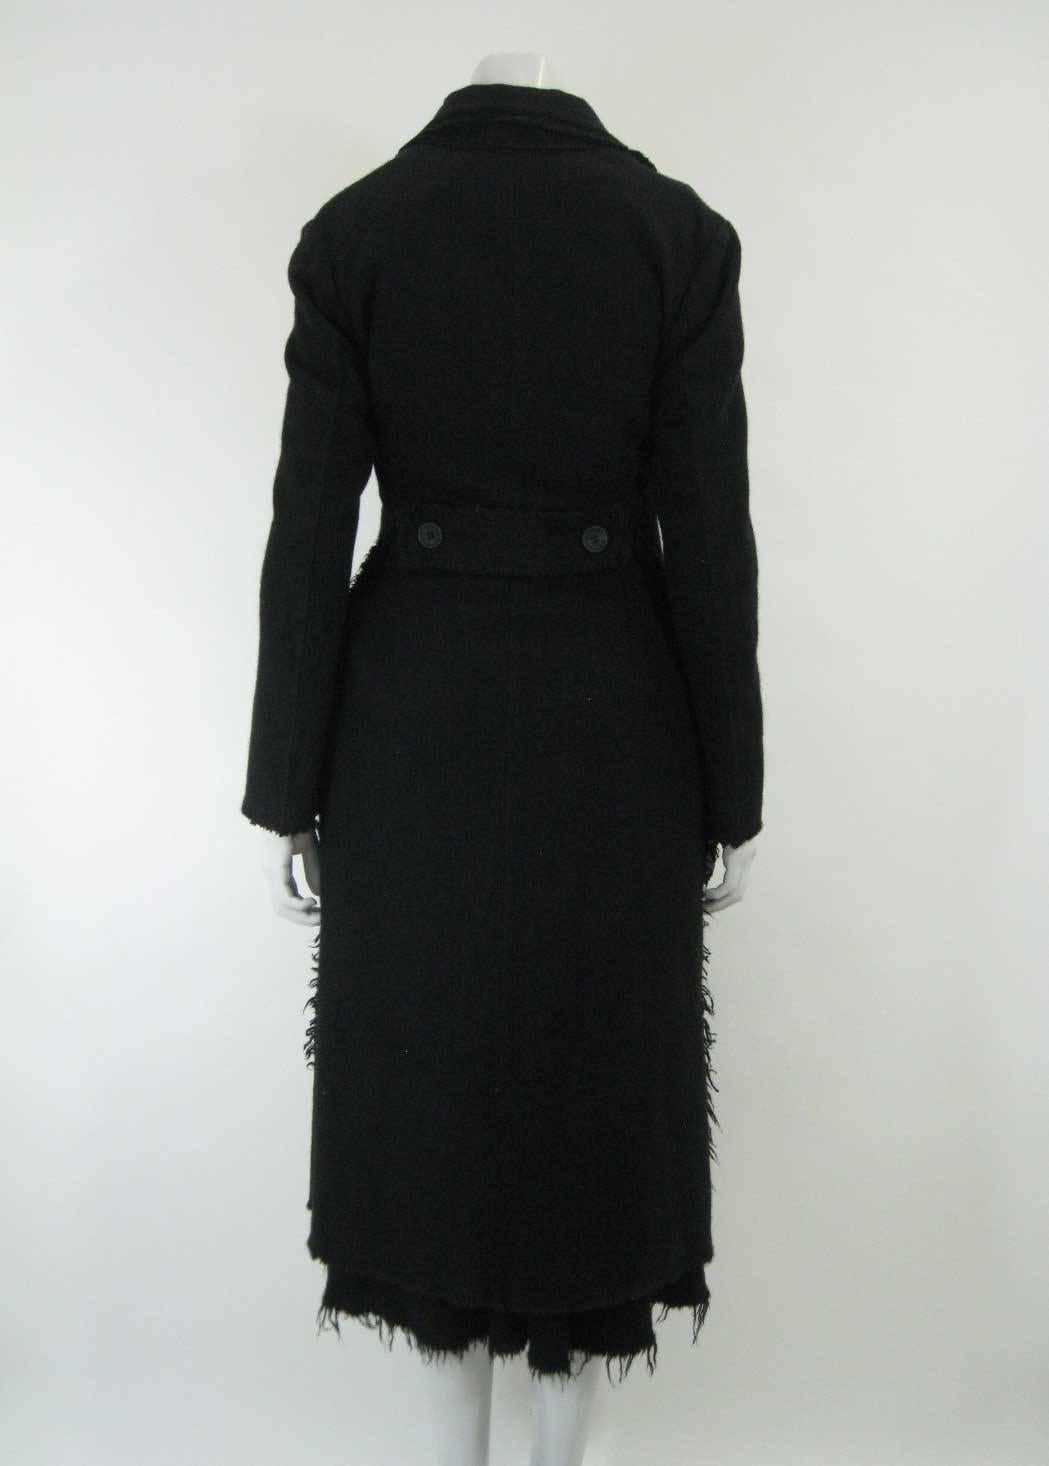 Junya Watanabe for Comme des Garcons 2003 Frayed Hem Coat & Dress For Sale 1